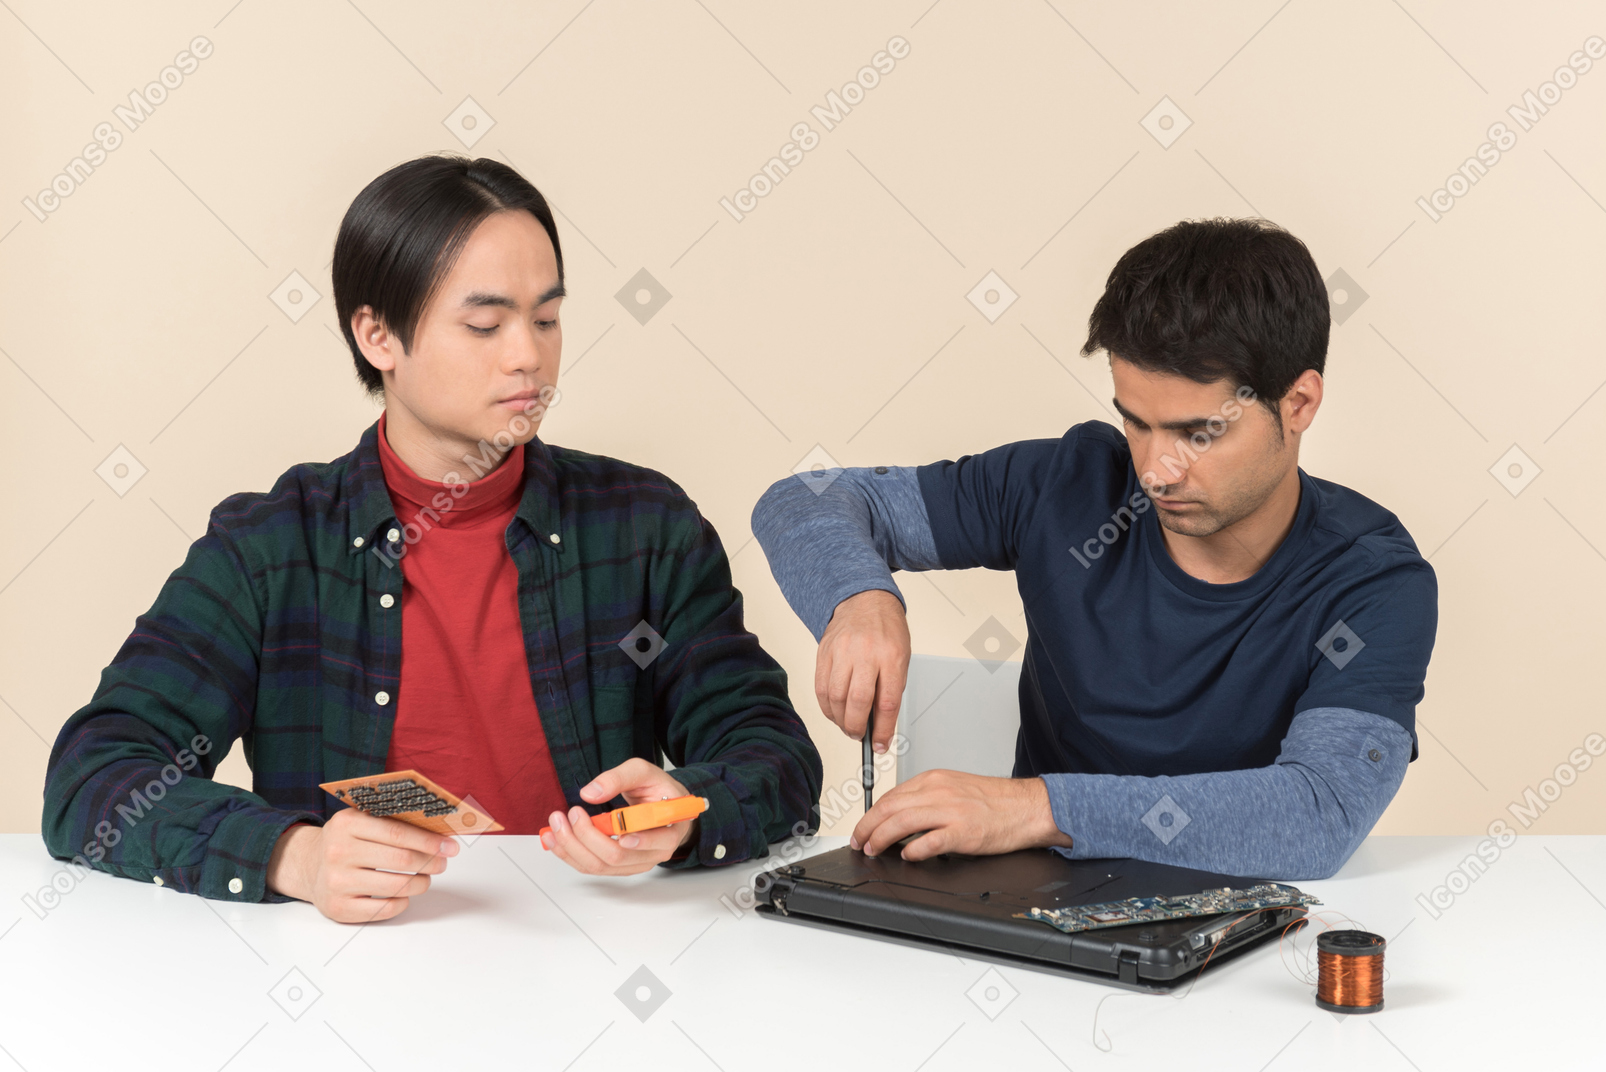 Dos jóvenes geeks sentados a la mesa y teniendo problemas para arreglar la laptop